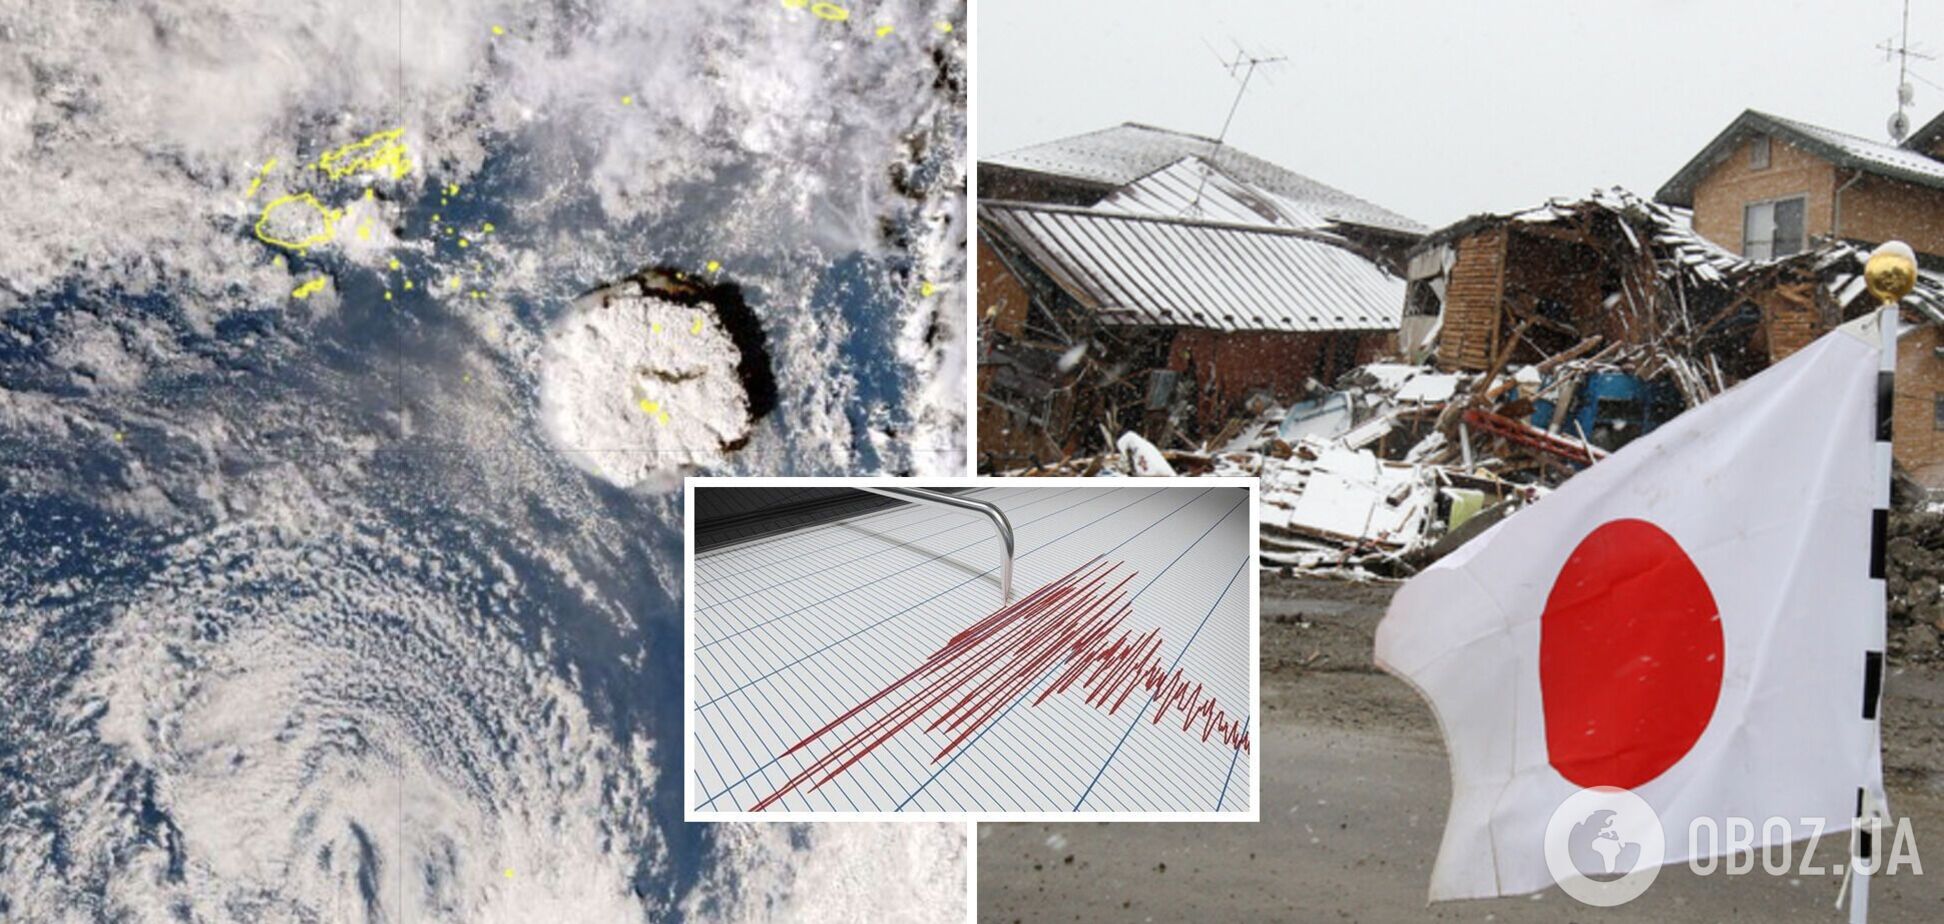 Японию всколыхнули мощные землетрясения, есть угроза цунами: власти выступили с предостережением. Видео